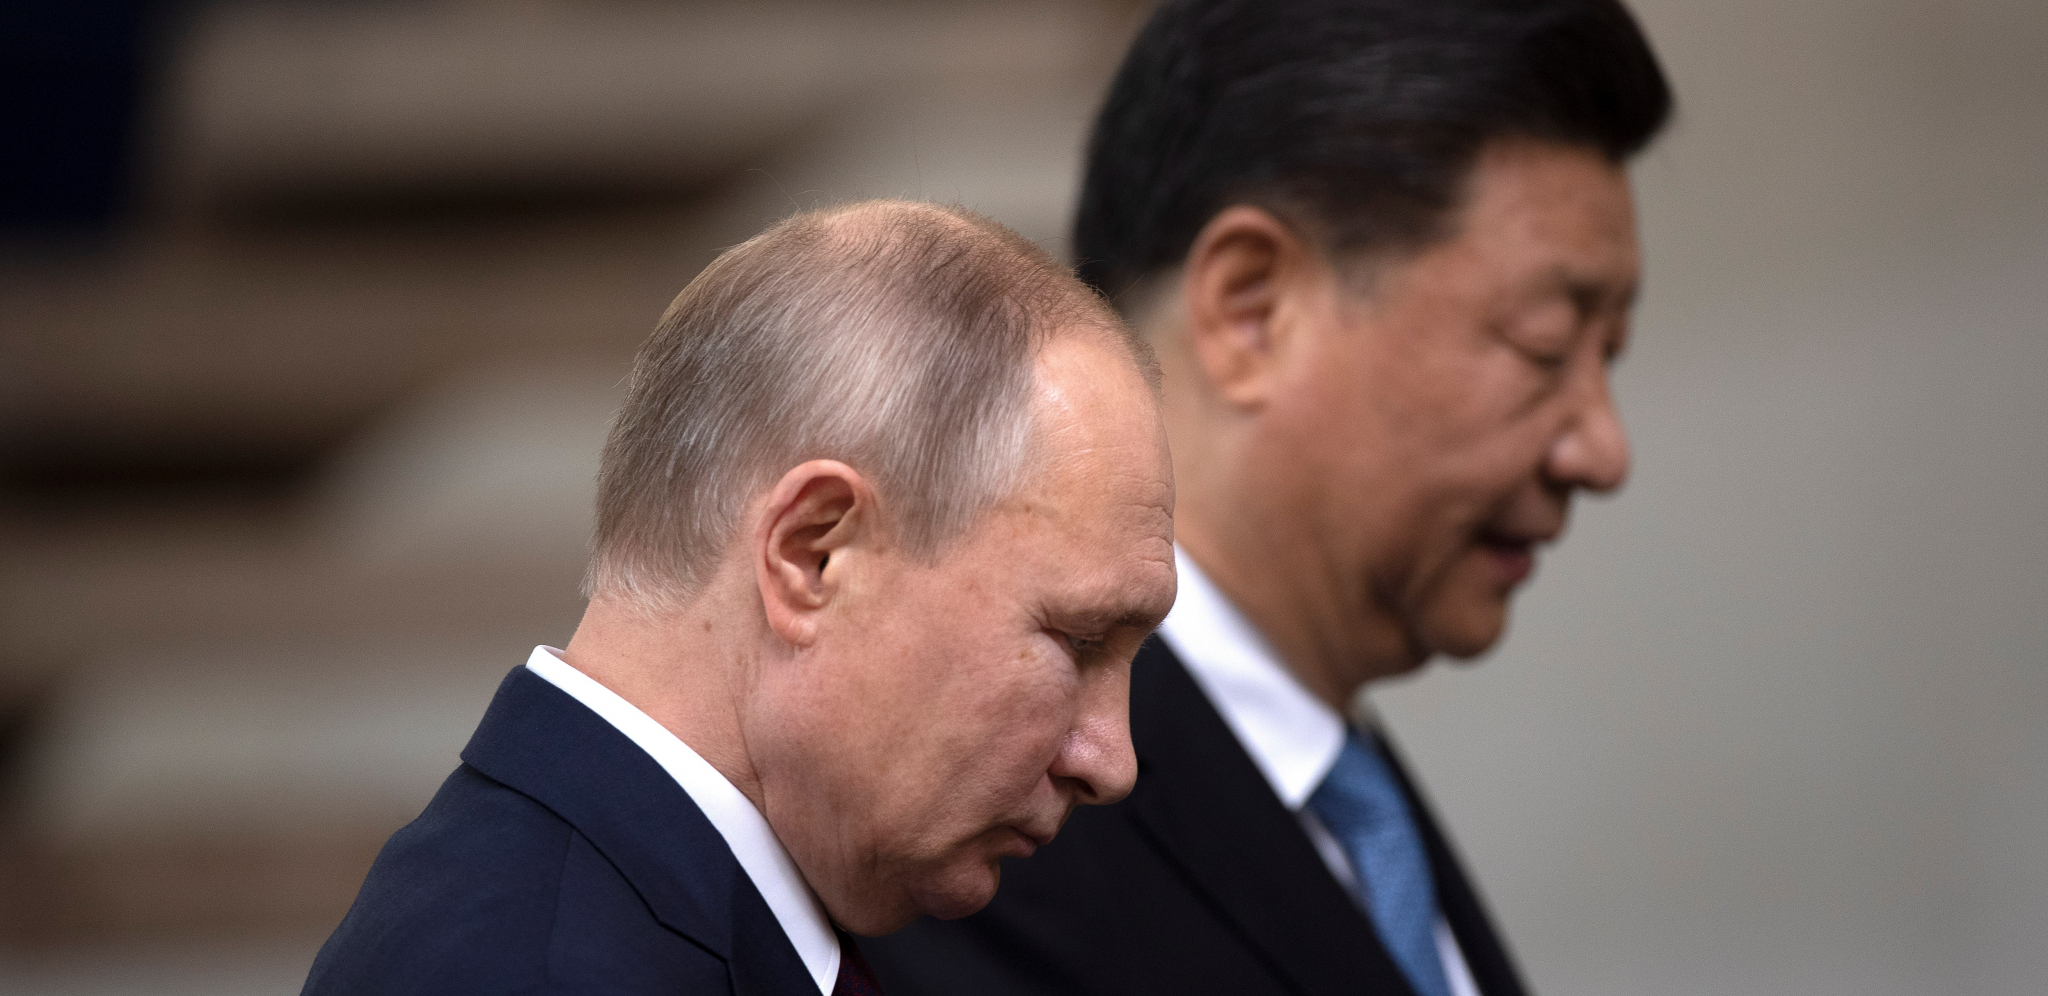 DEBAKL VAŠINGTONA ZBOG ŠIZOFRENE POLITIKE Amerikanci učvrstili rusko-kinesku alijansu